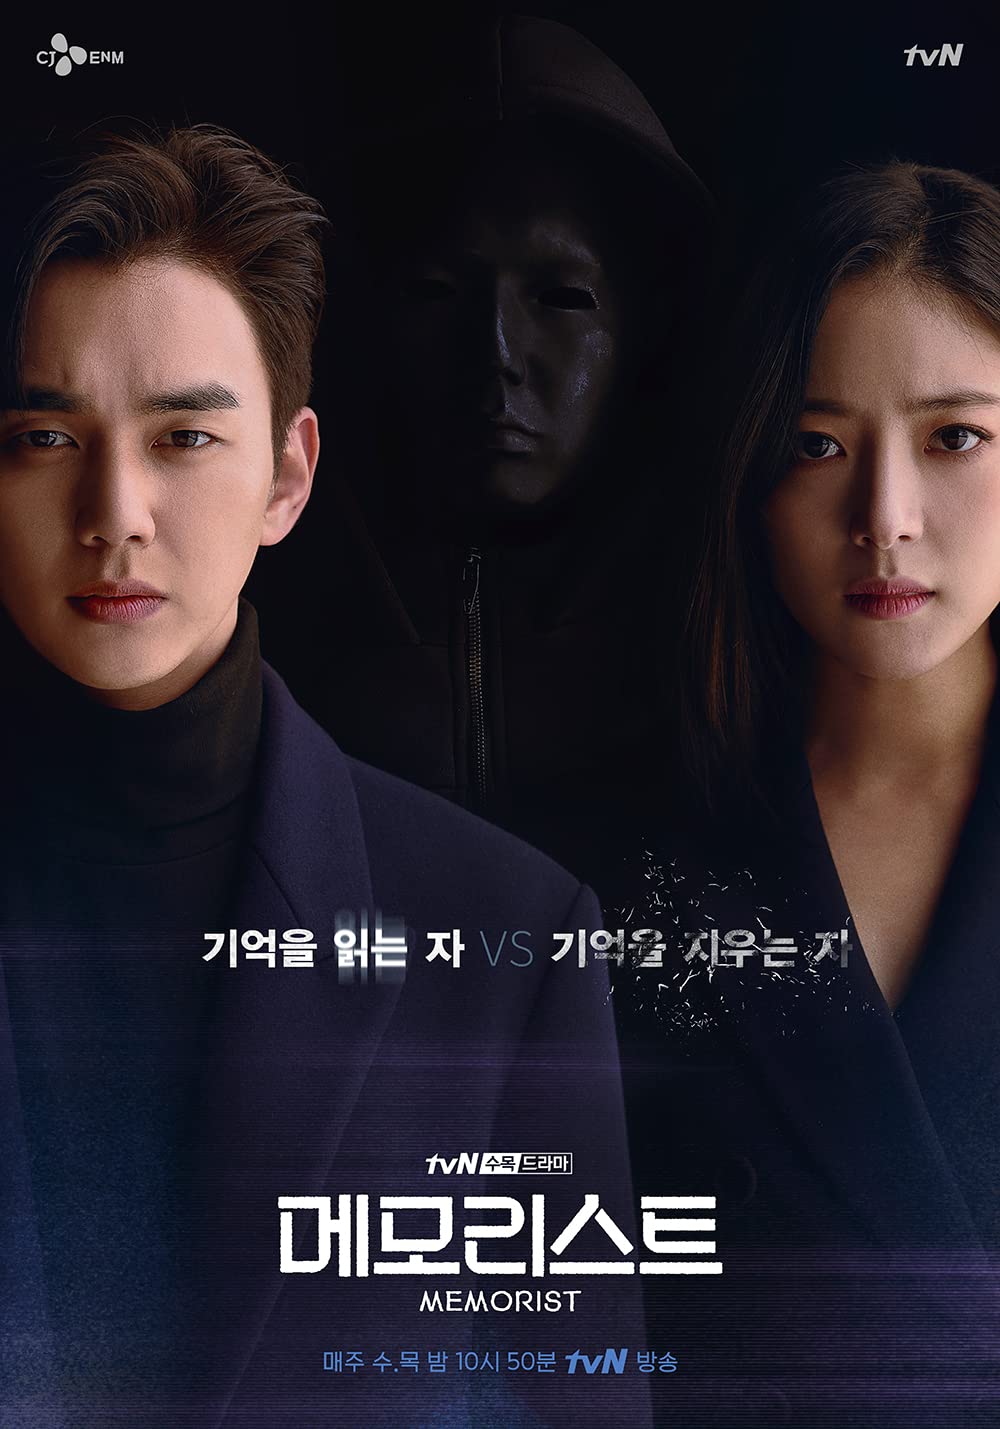 Phim tư tưởng tội phạm Nước Hàn 